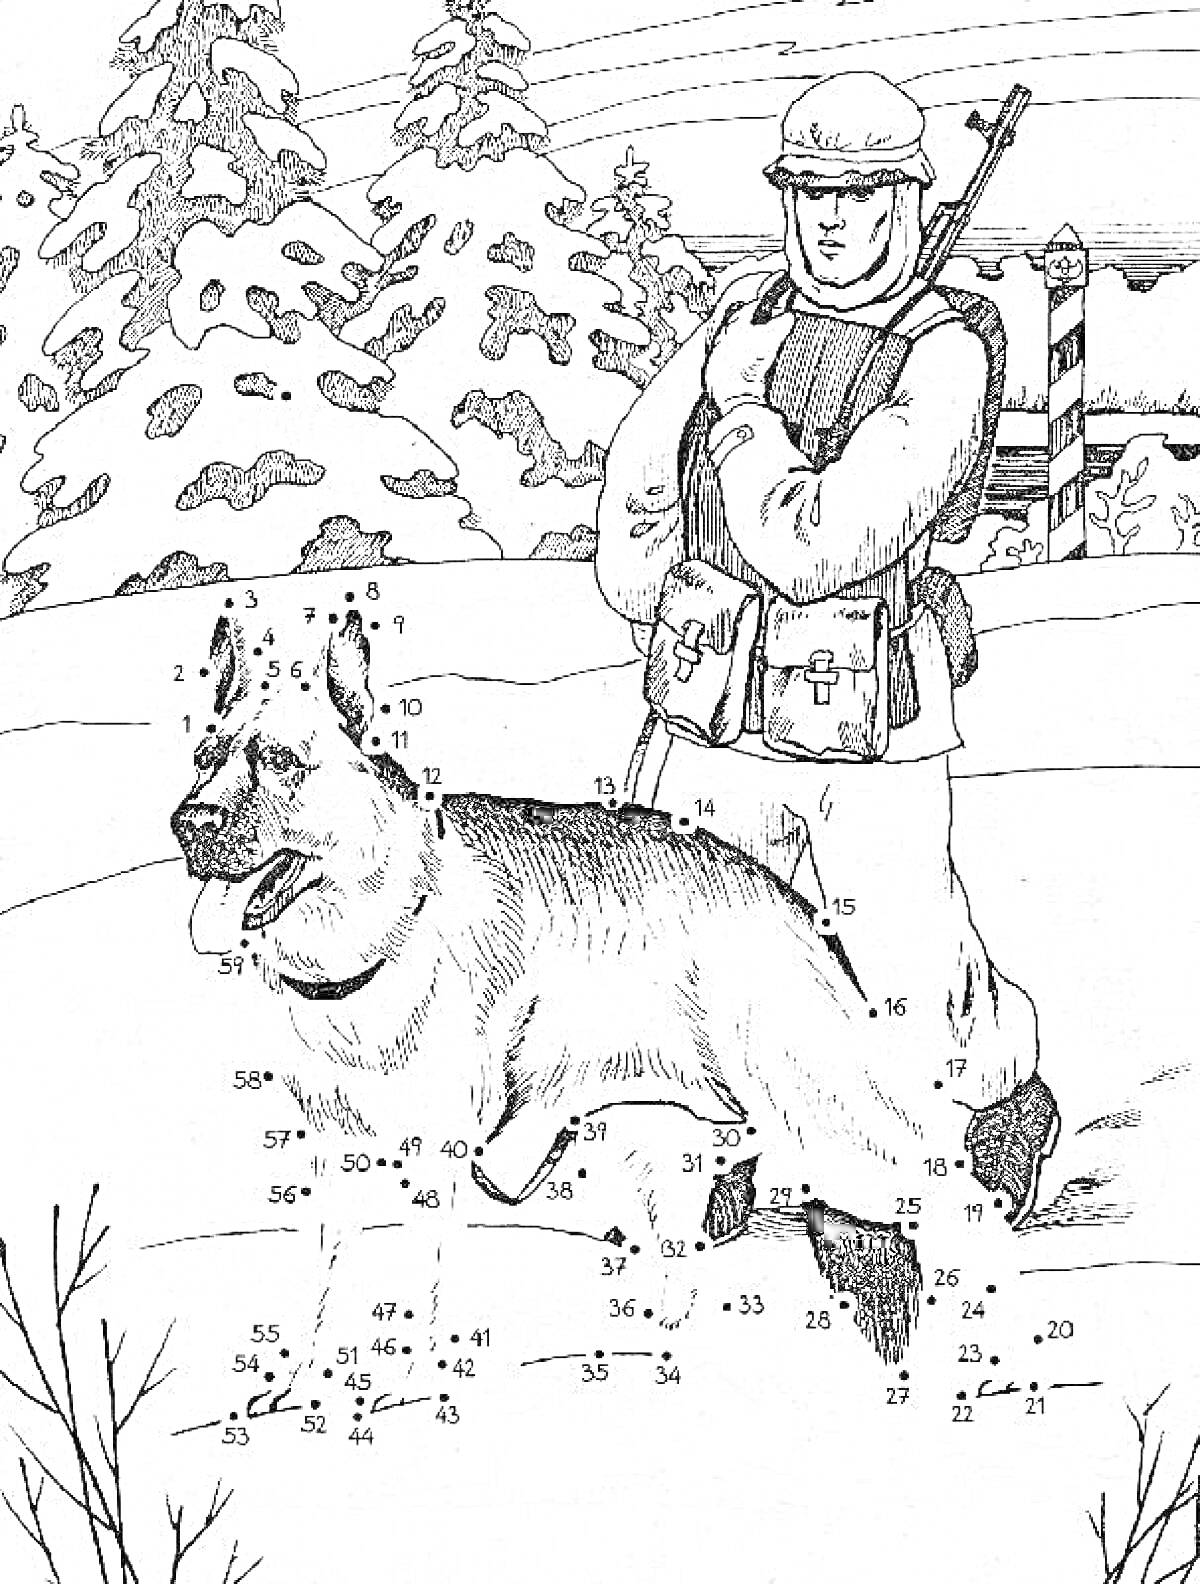 Пограничник с автоматом и овчаркой на посту зимой в лесу, на заднем плане пограничный столб